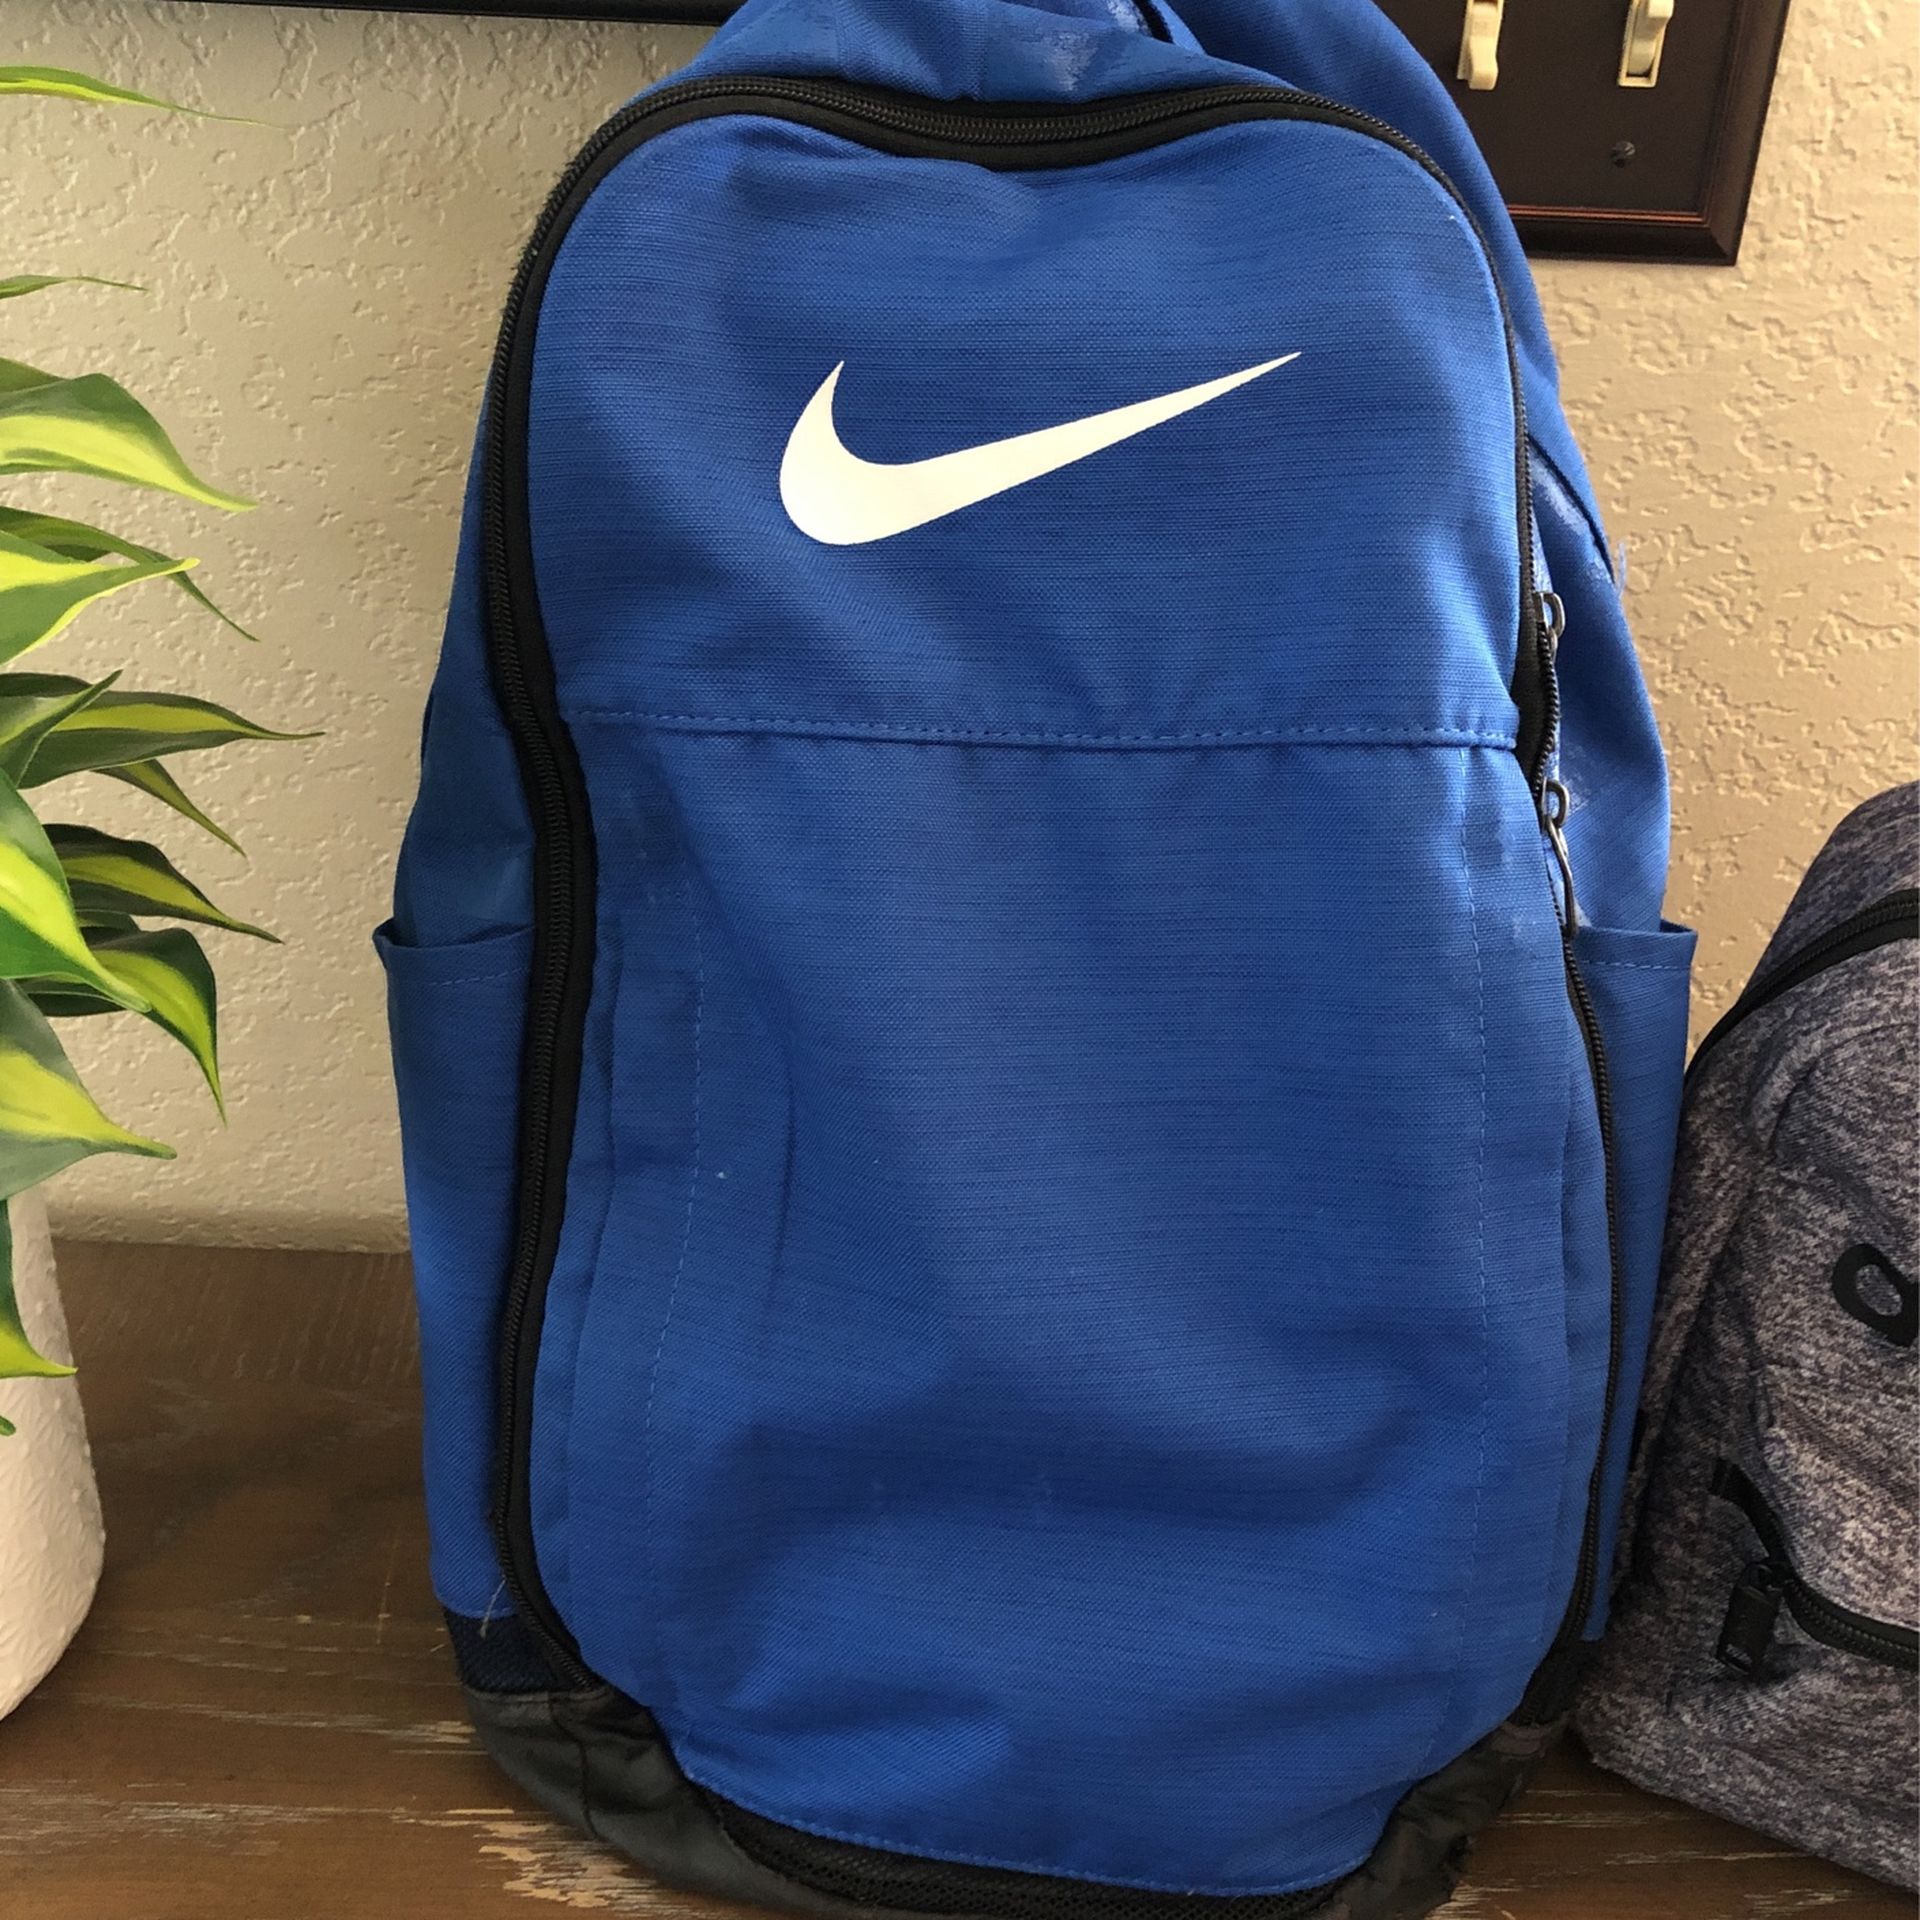 Blue Nike Backpack 